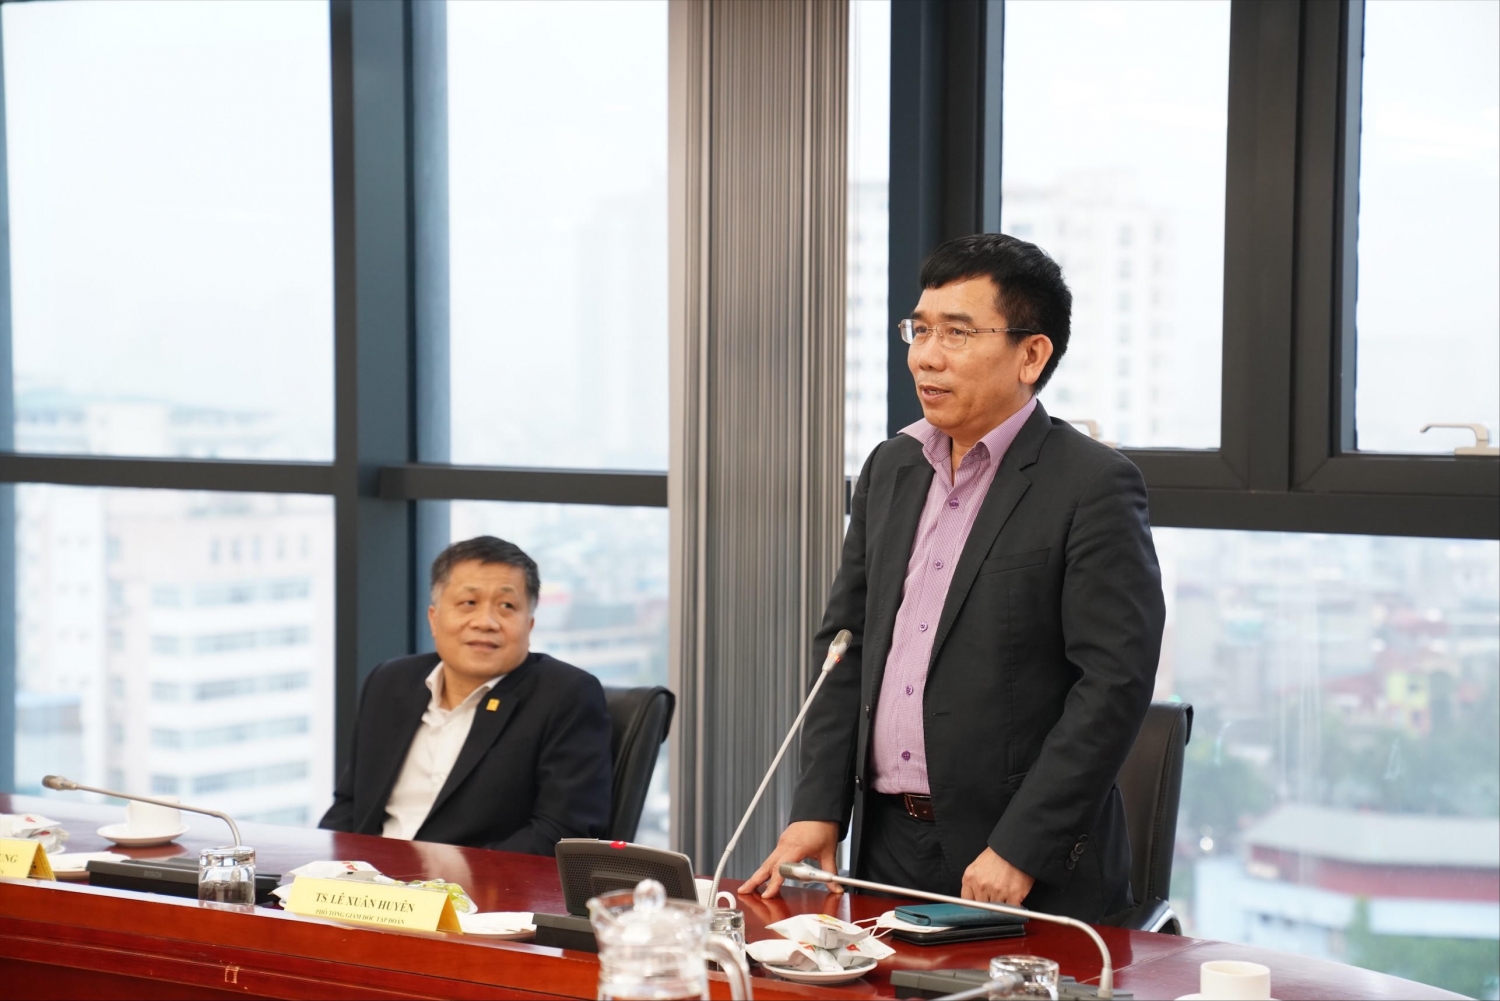 Petrovietnam công bố, trao quyết định bổ nhiệm lại Phó Viện trưởng VPI đối với TS. Nguyễn Minh Quý